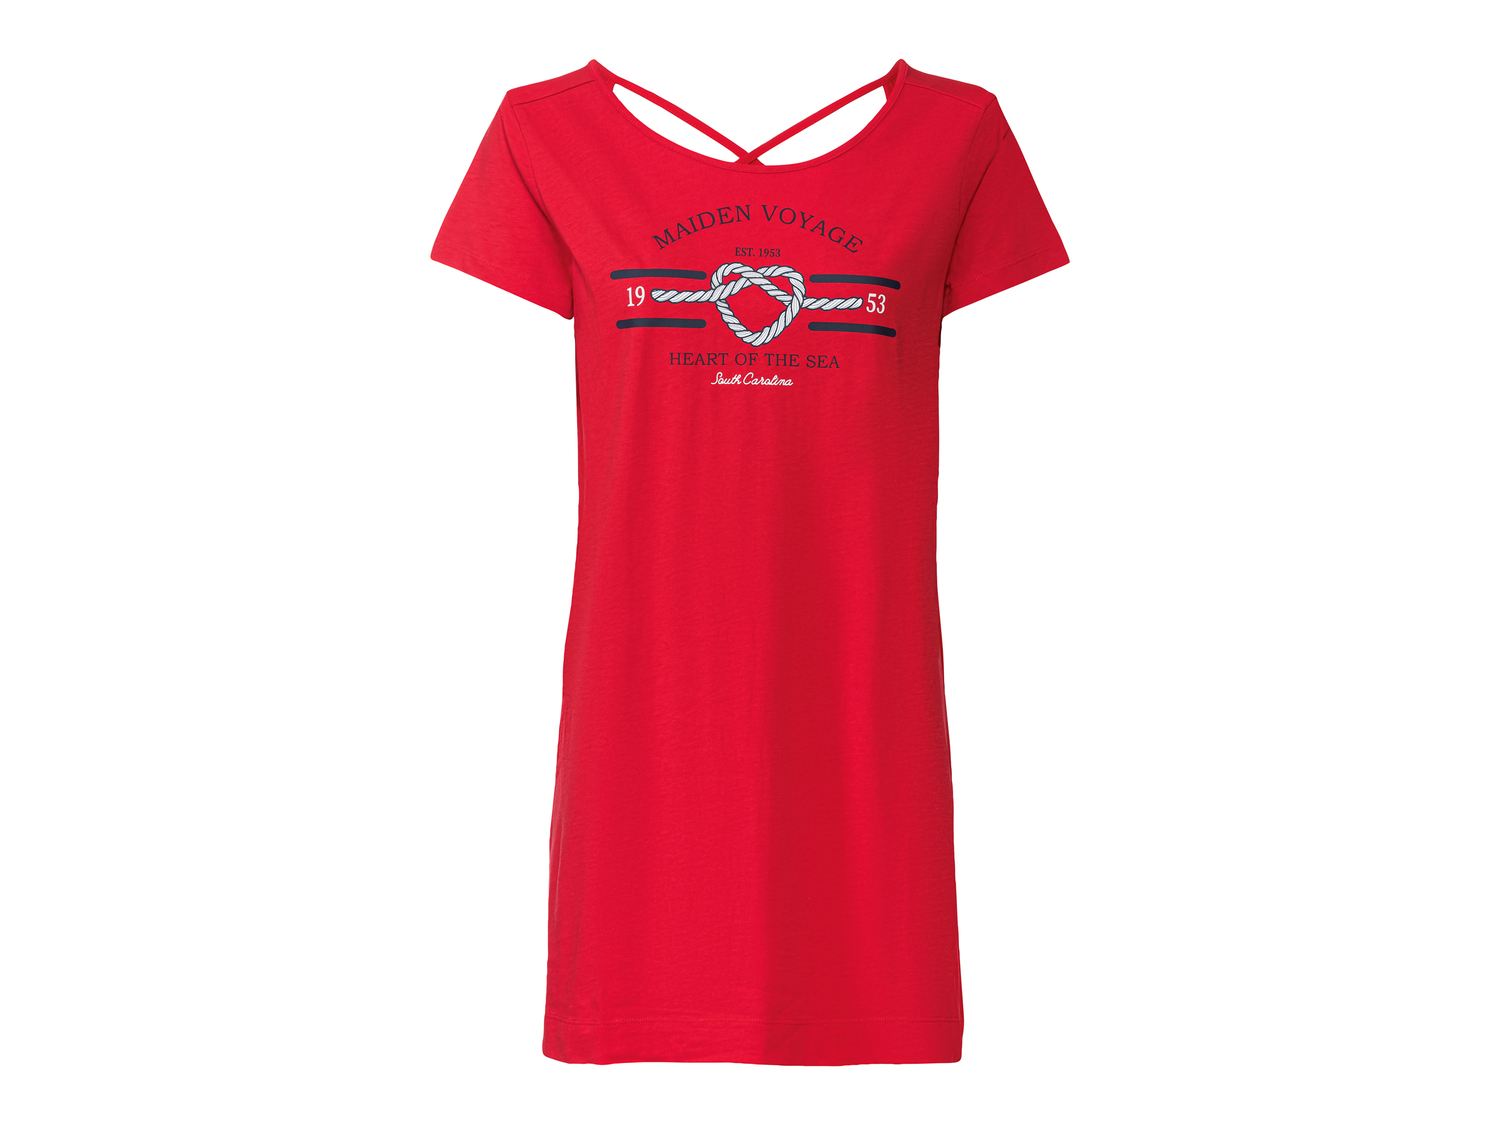 T-shirt lunga da donna Esmara, prezzo 4.99 &#8364; 
Misure: S-L 
- 
Puro cotone
Taglie ...